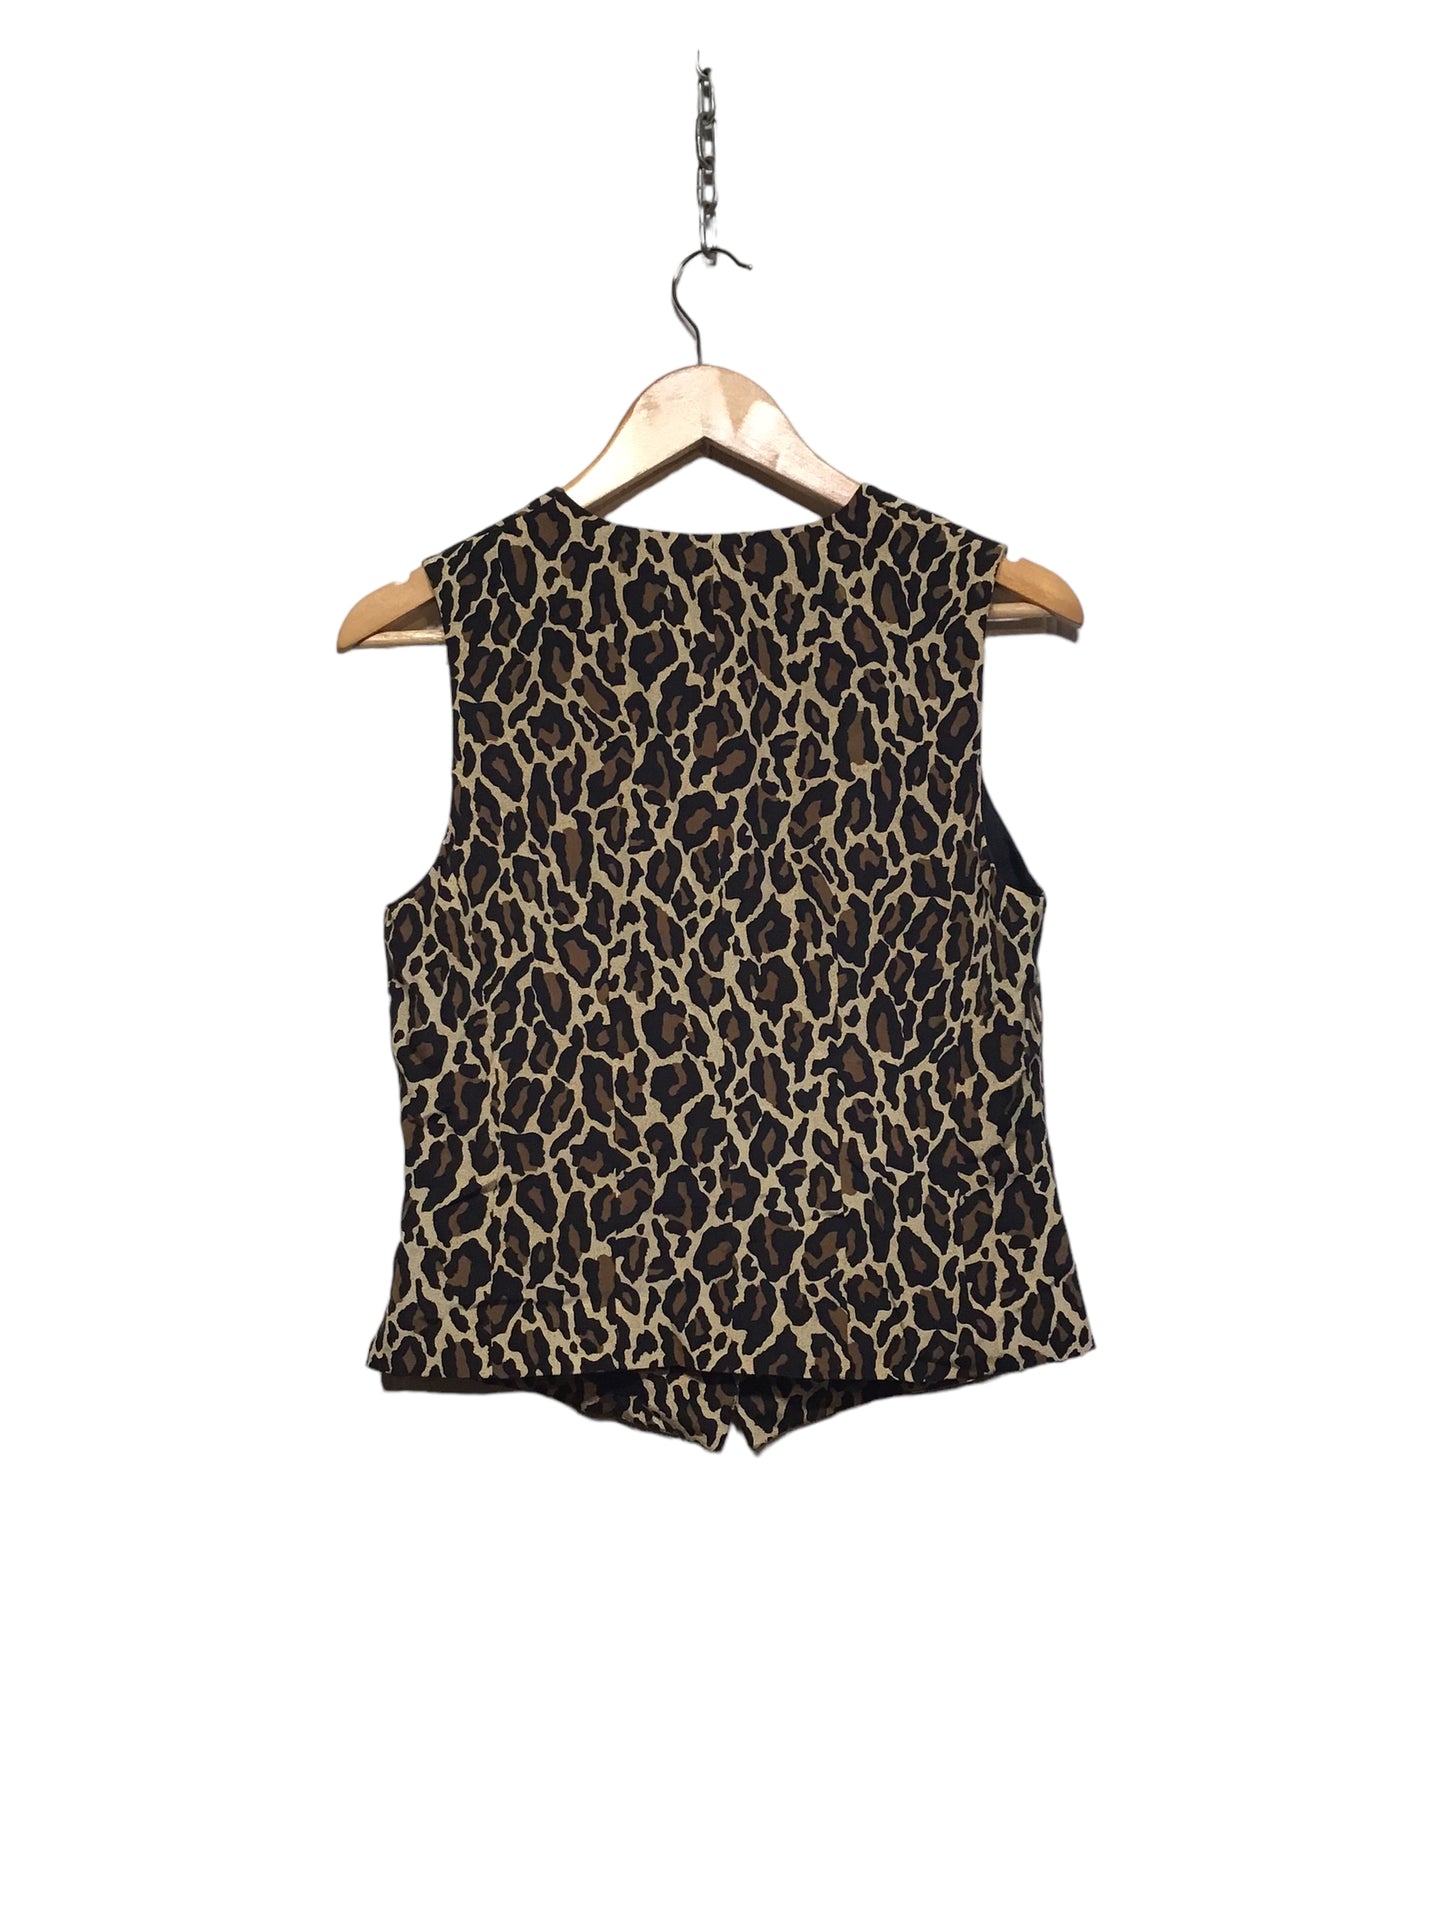 Leopard Print Waistcoat (Size L)